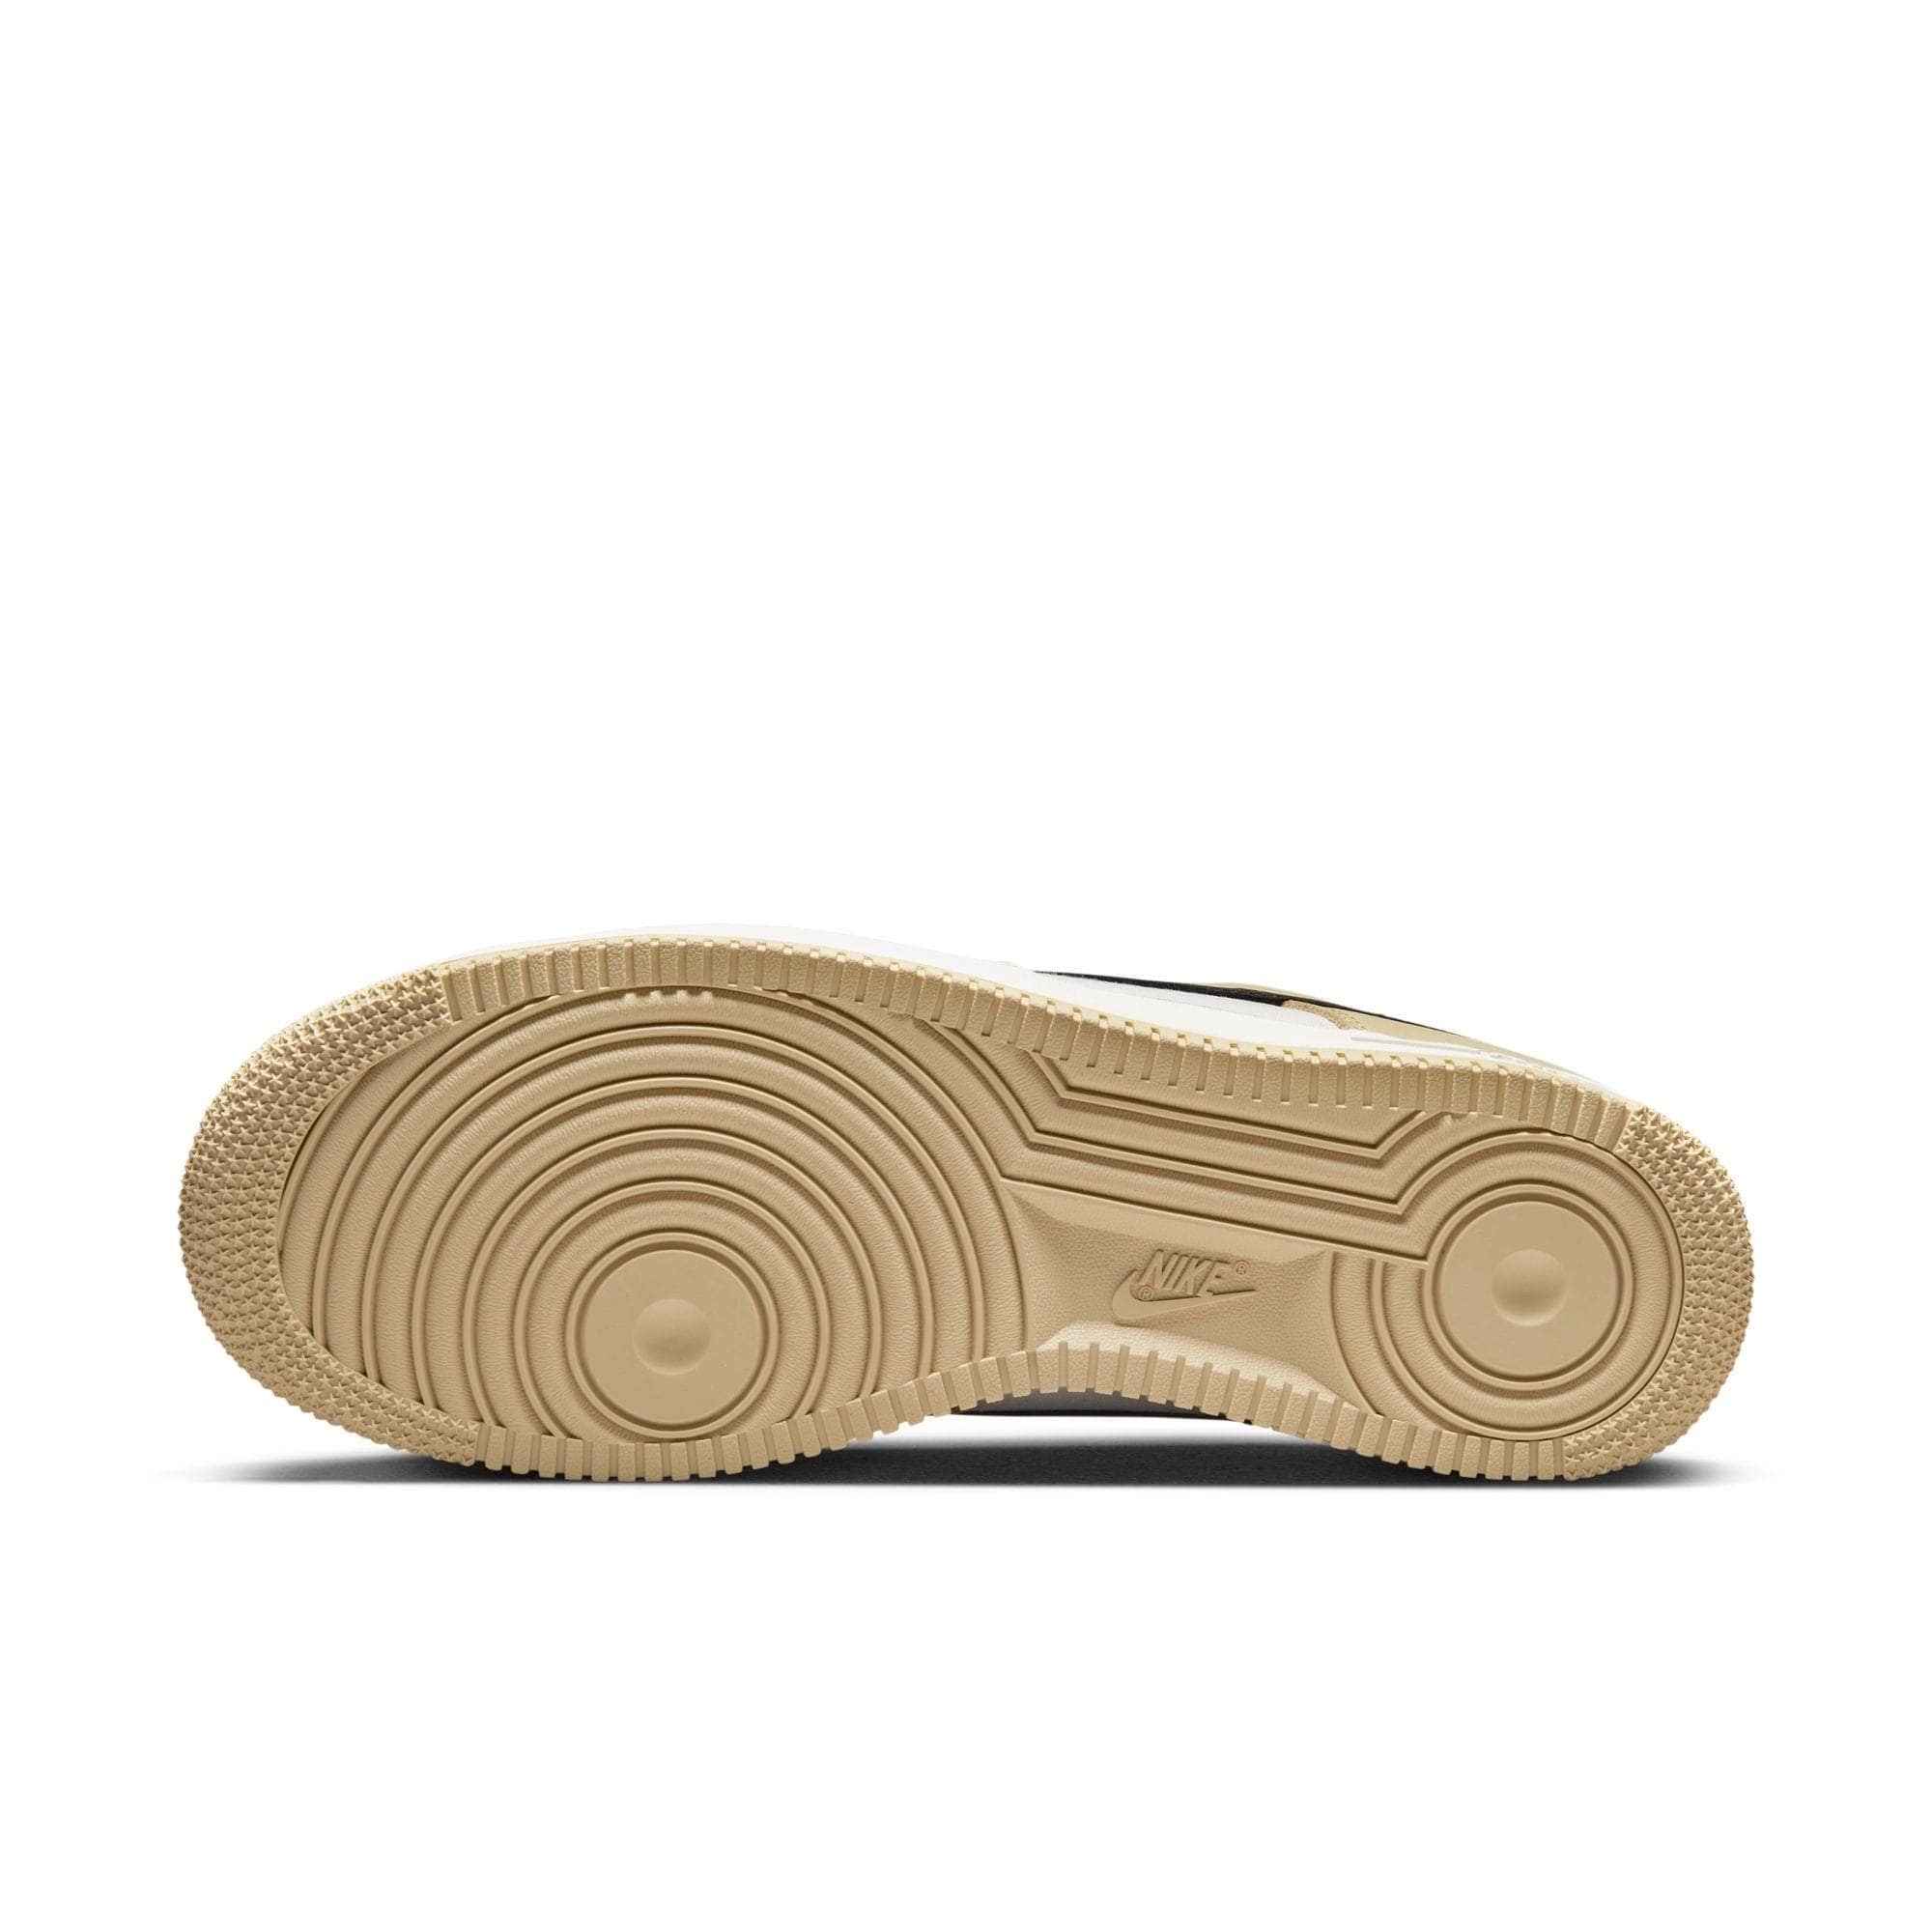 NIKE FOOTWEAR Nike Air Force 1 Low LX ’Team Gold’ - Men's